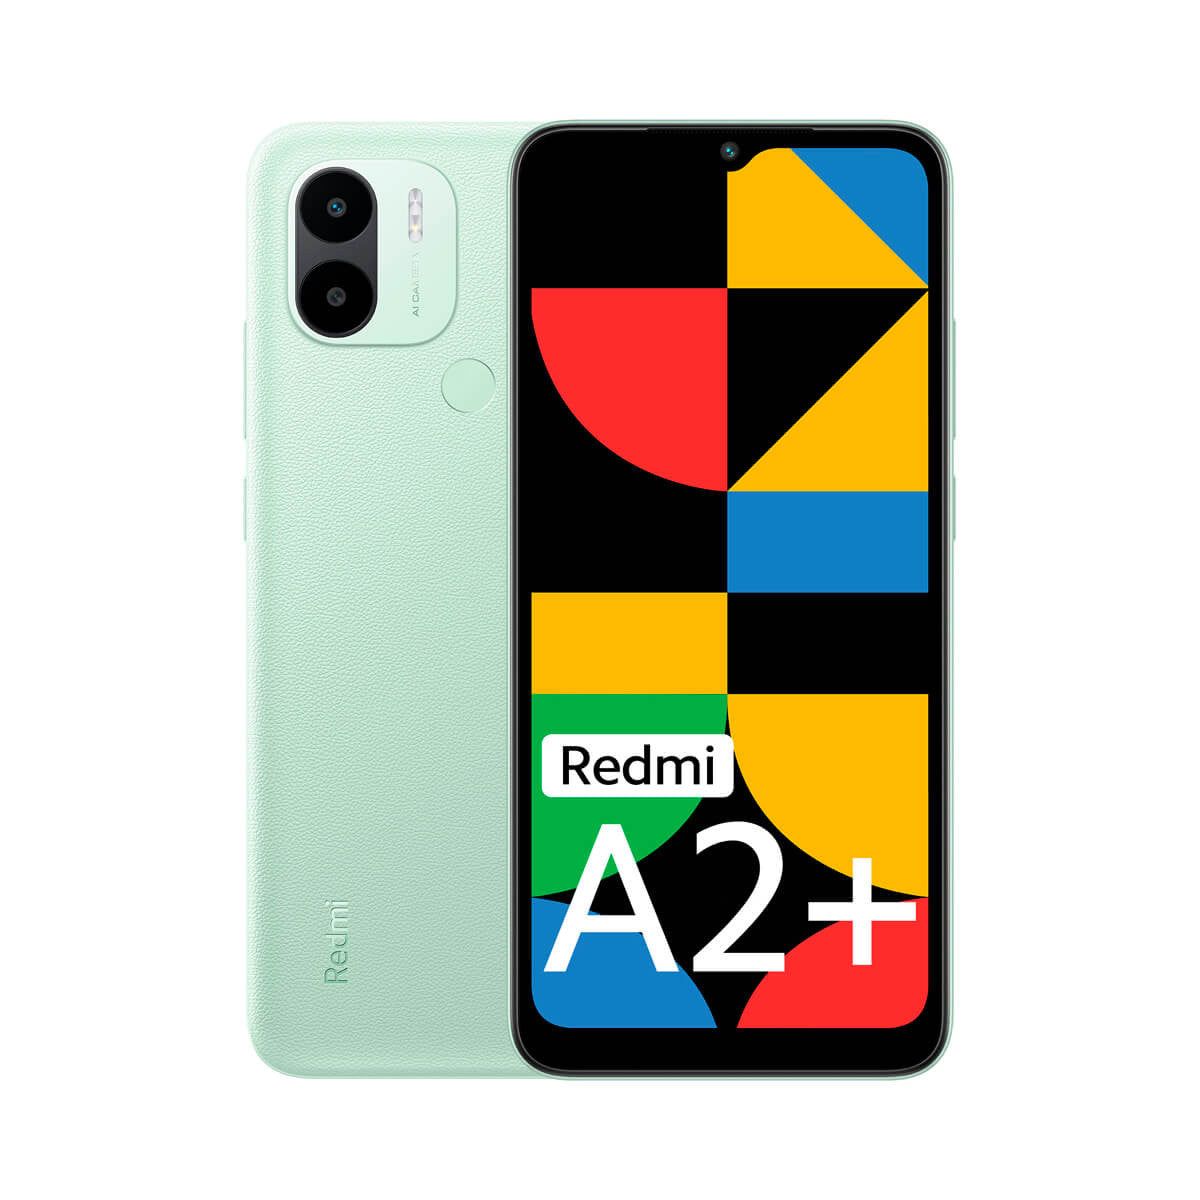 Xiaomi Redmi A2+ 2GB/32GB Verde (Sea Green) Dual SIM Smartphone | Xiaomi